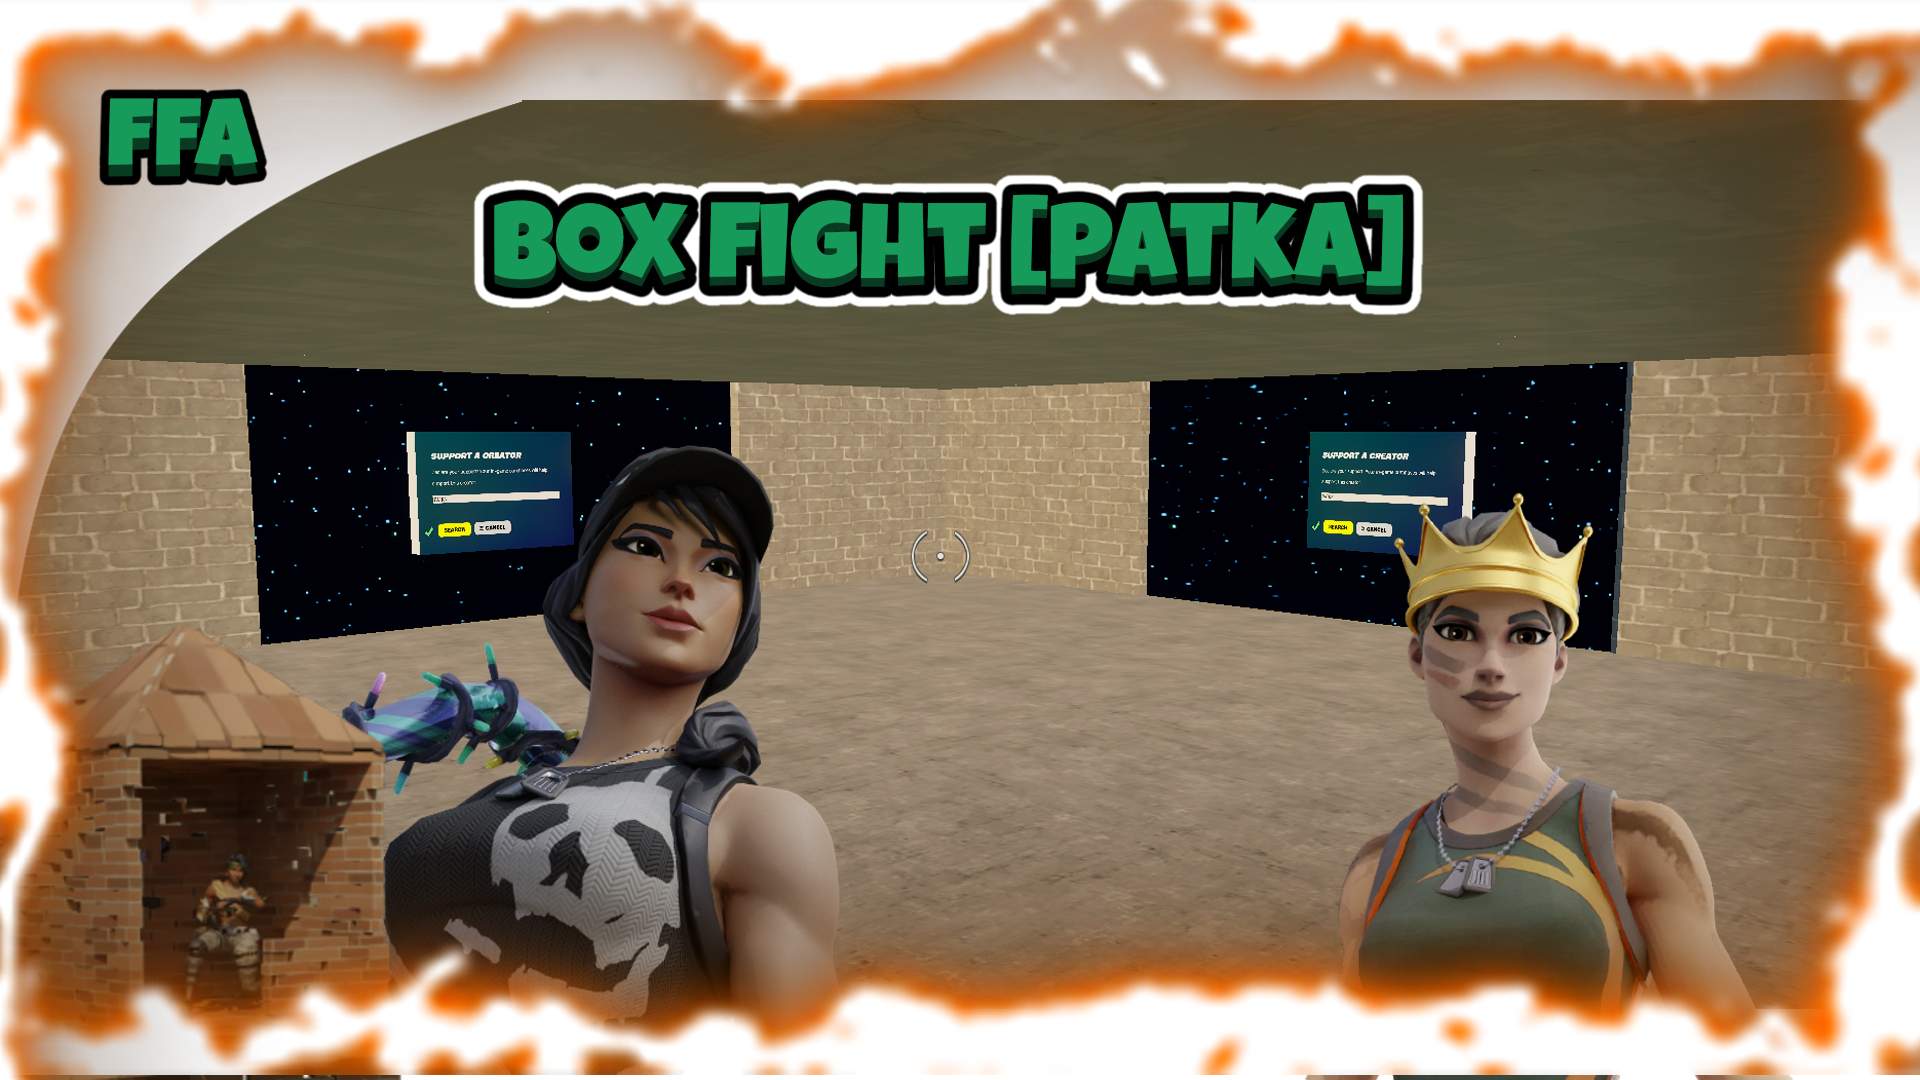 FFA BOXFIGHT [PATKA]